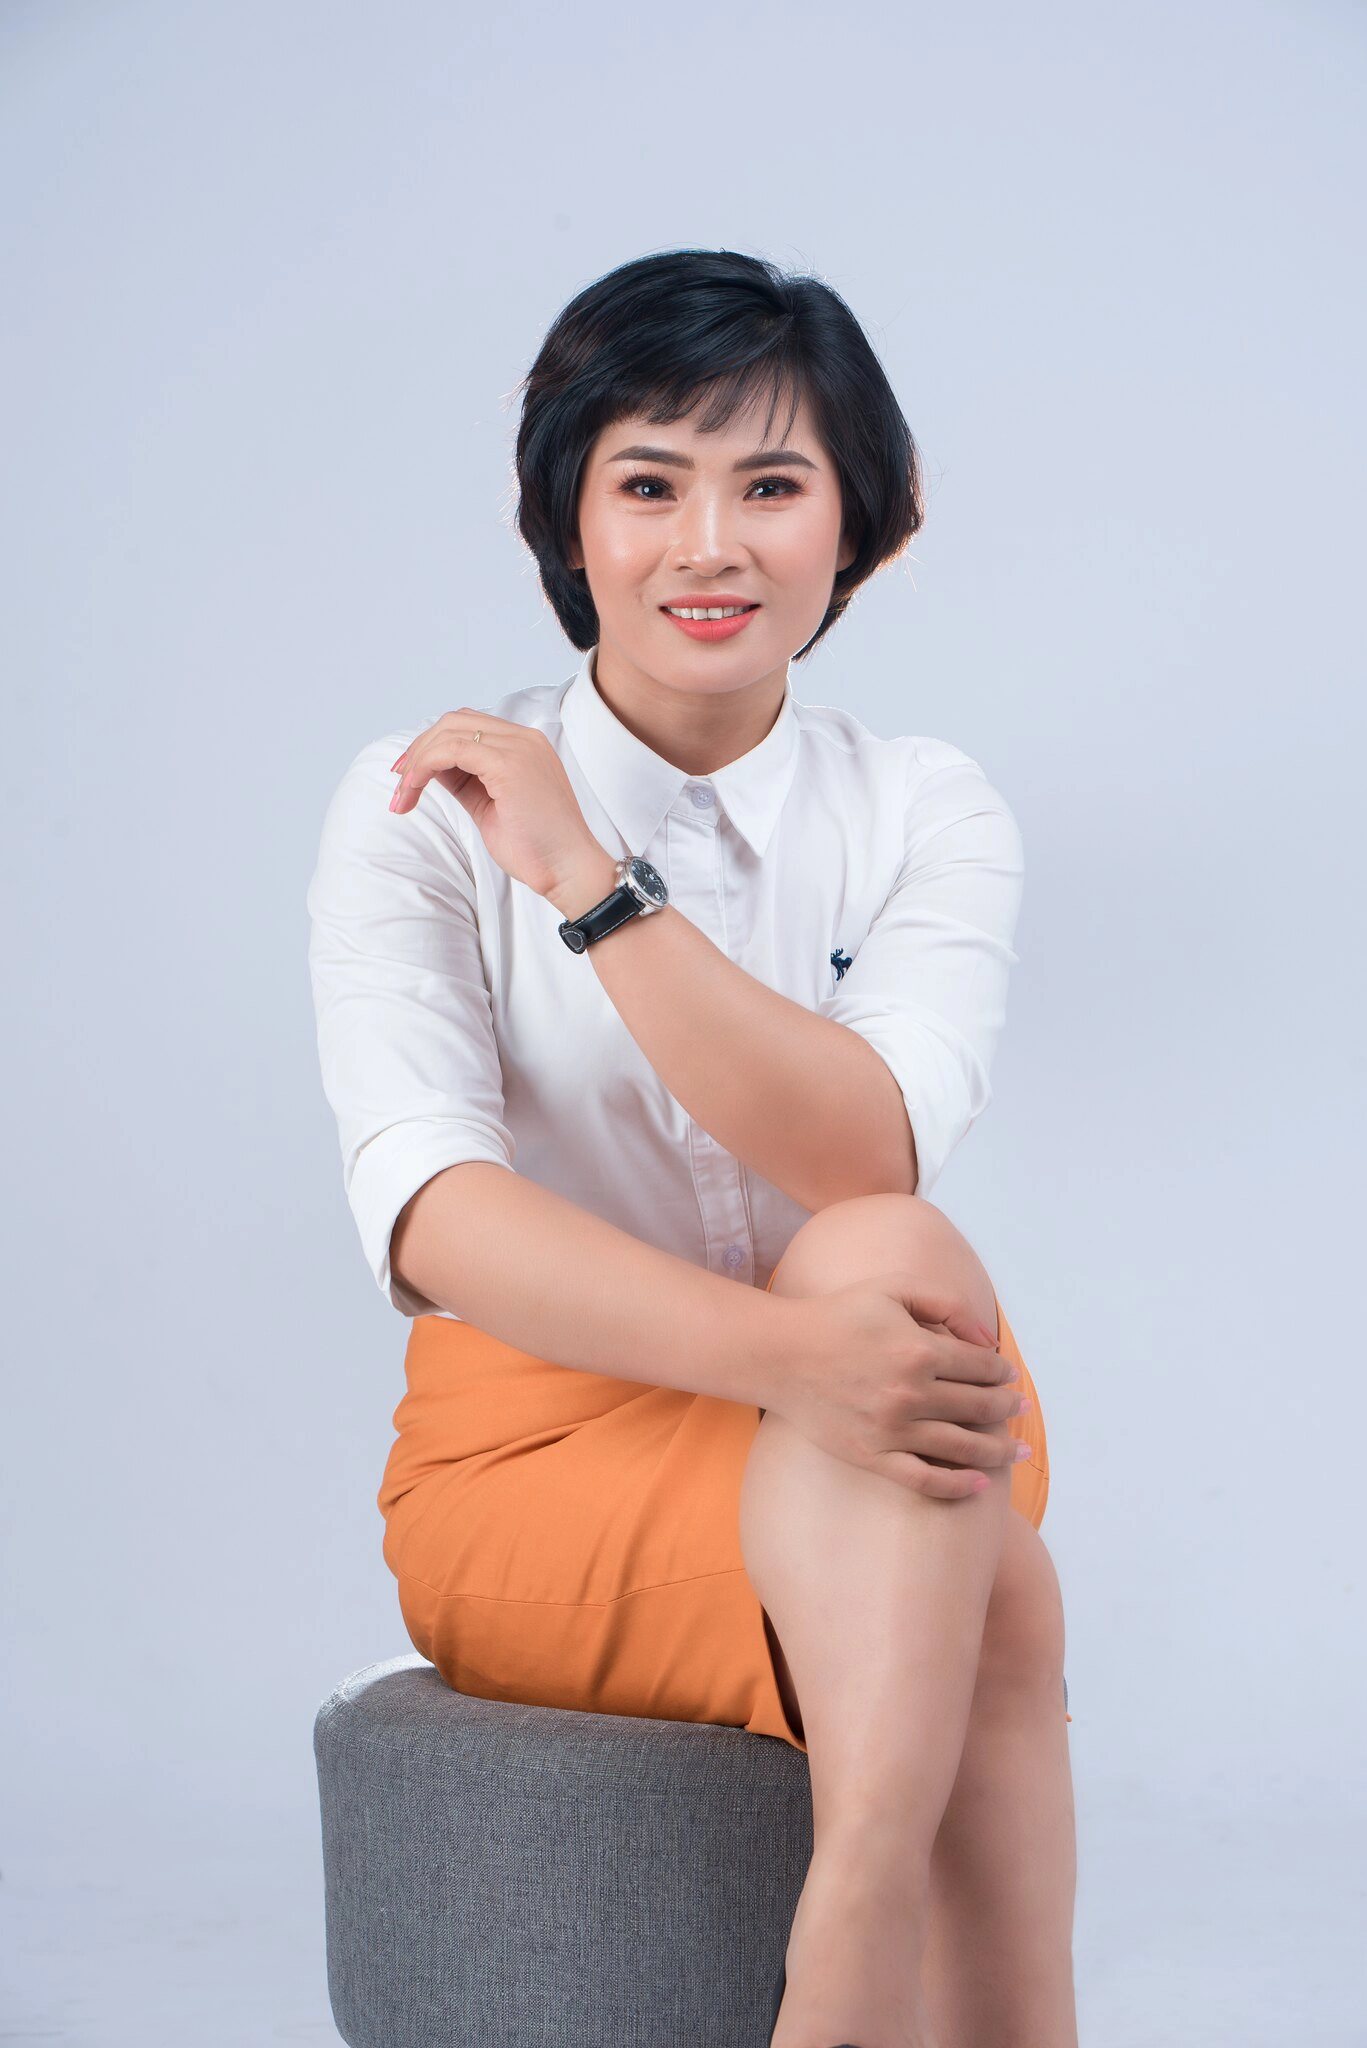 cong ty manulife 14 min - 49 cách tạo dáng chụp ảnh profile đẹp, chuyên nghiệp nhất- HThao Studio